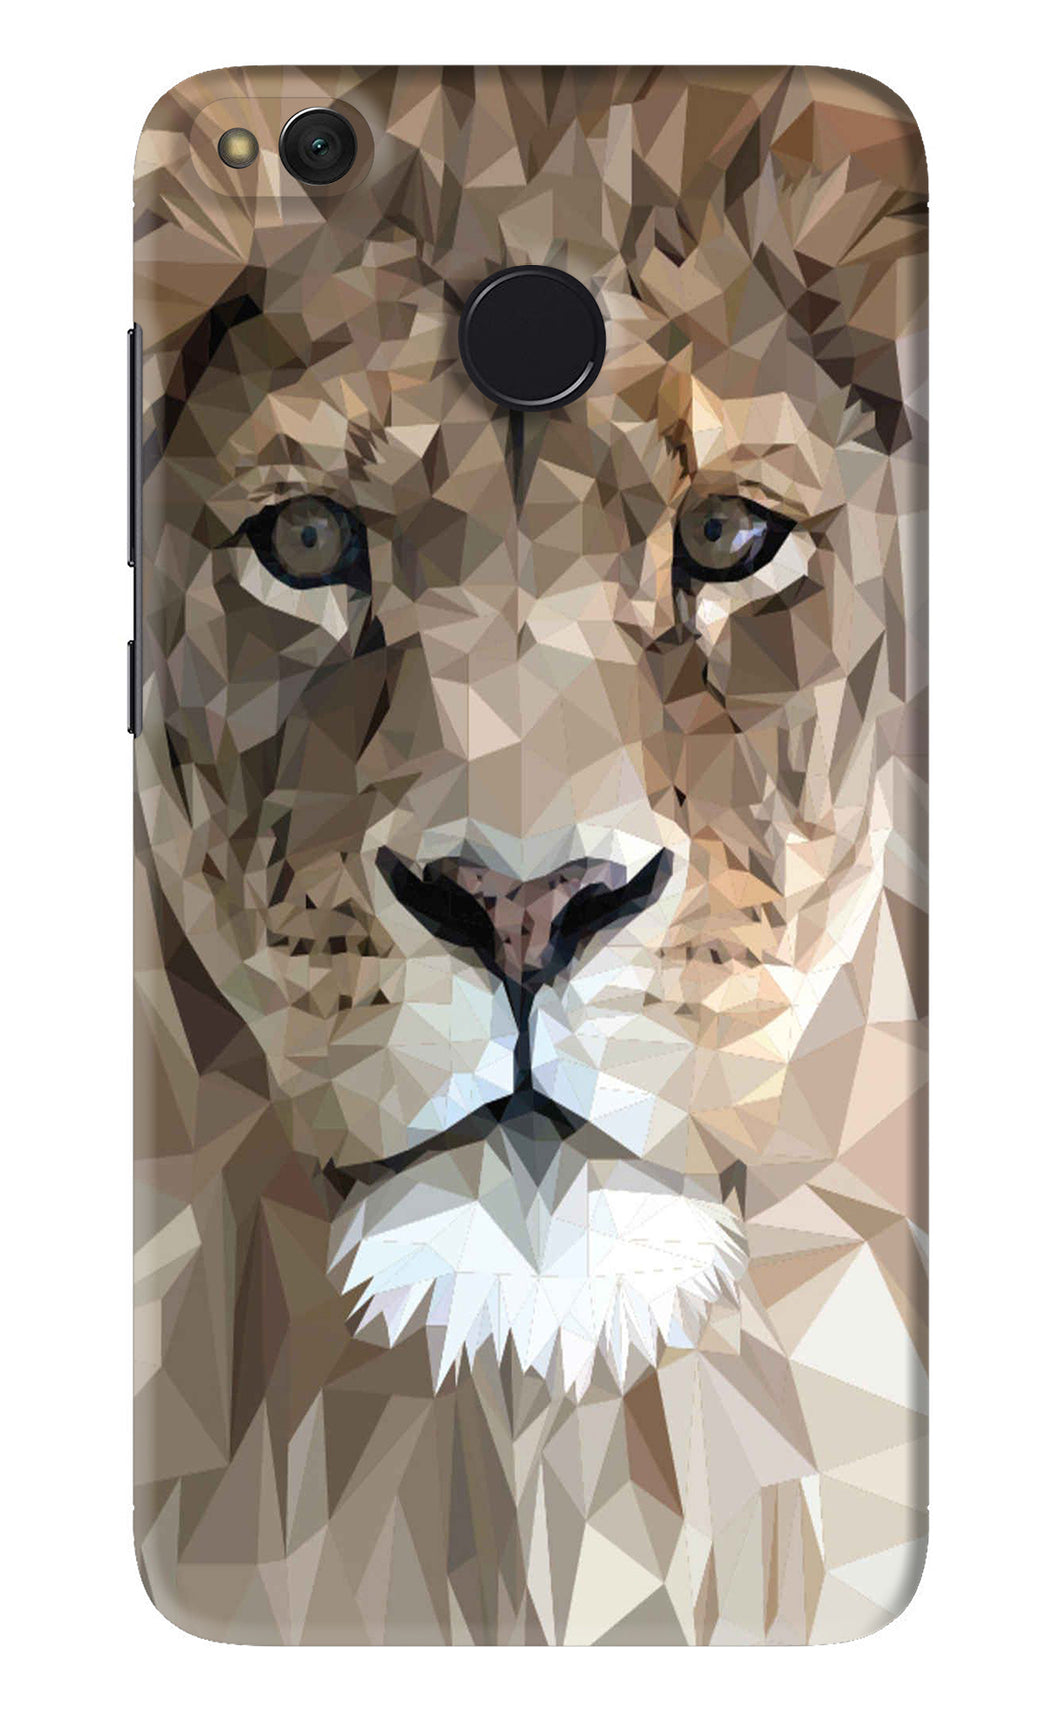 Lion Art Xiaomi Redmi 4 Back Skin Wrap